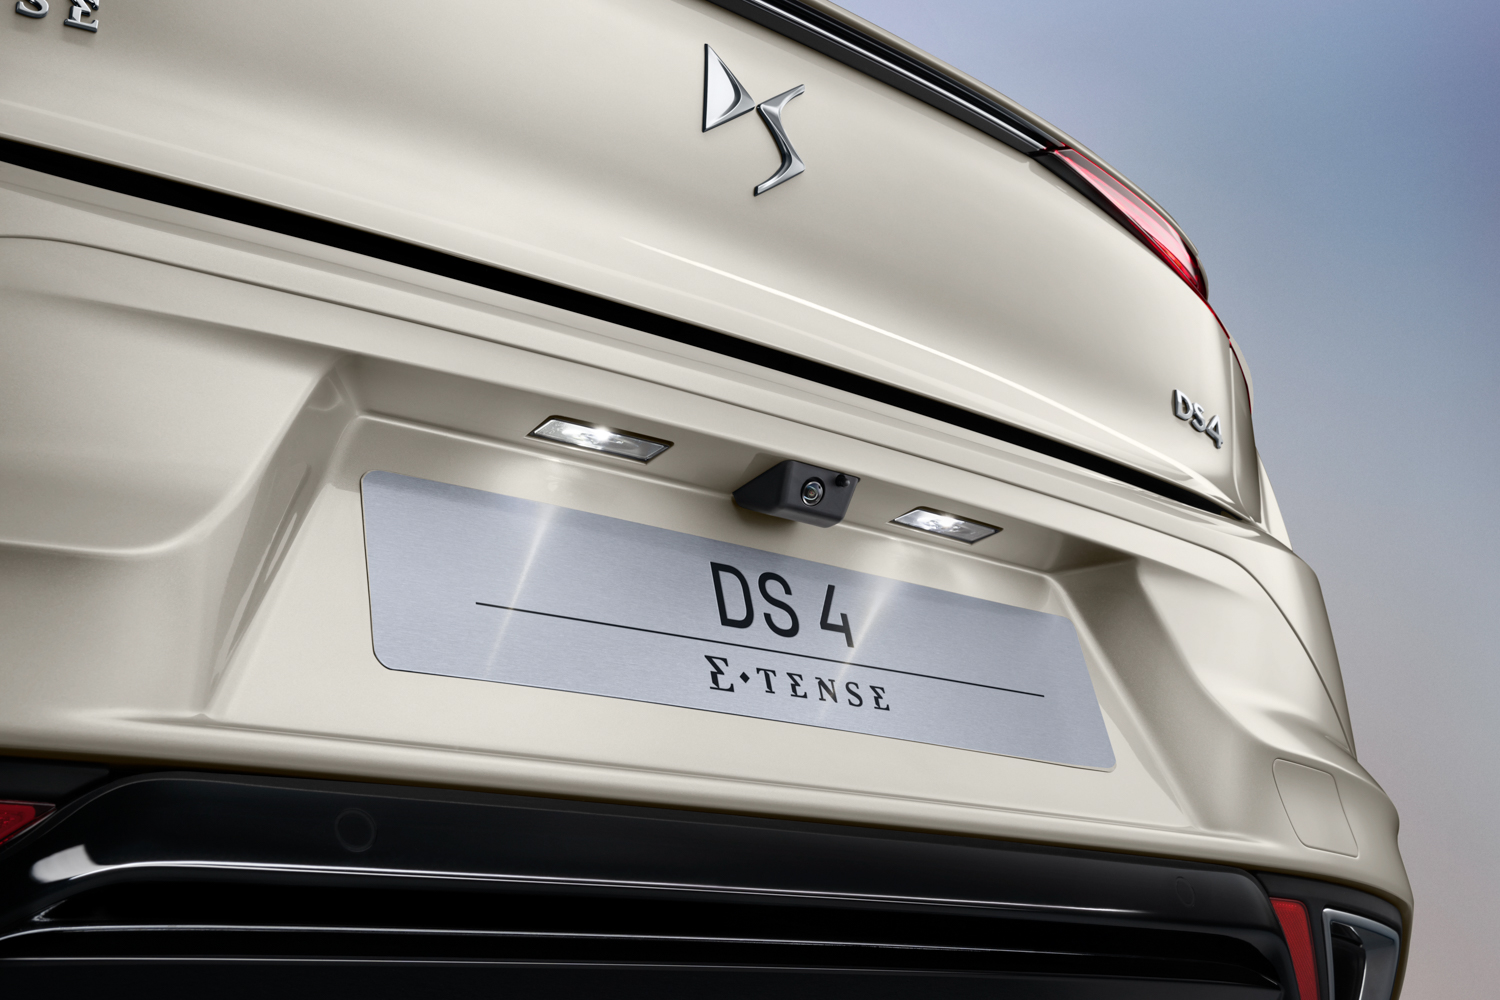 DS 4 targets premium hatchback elite